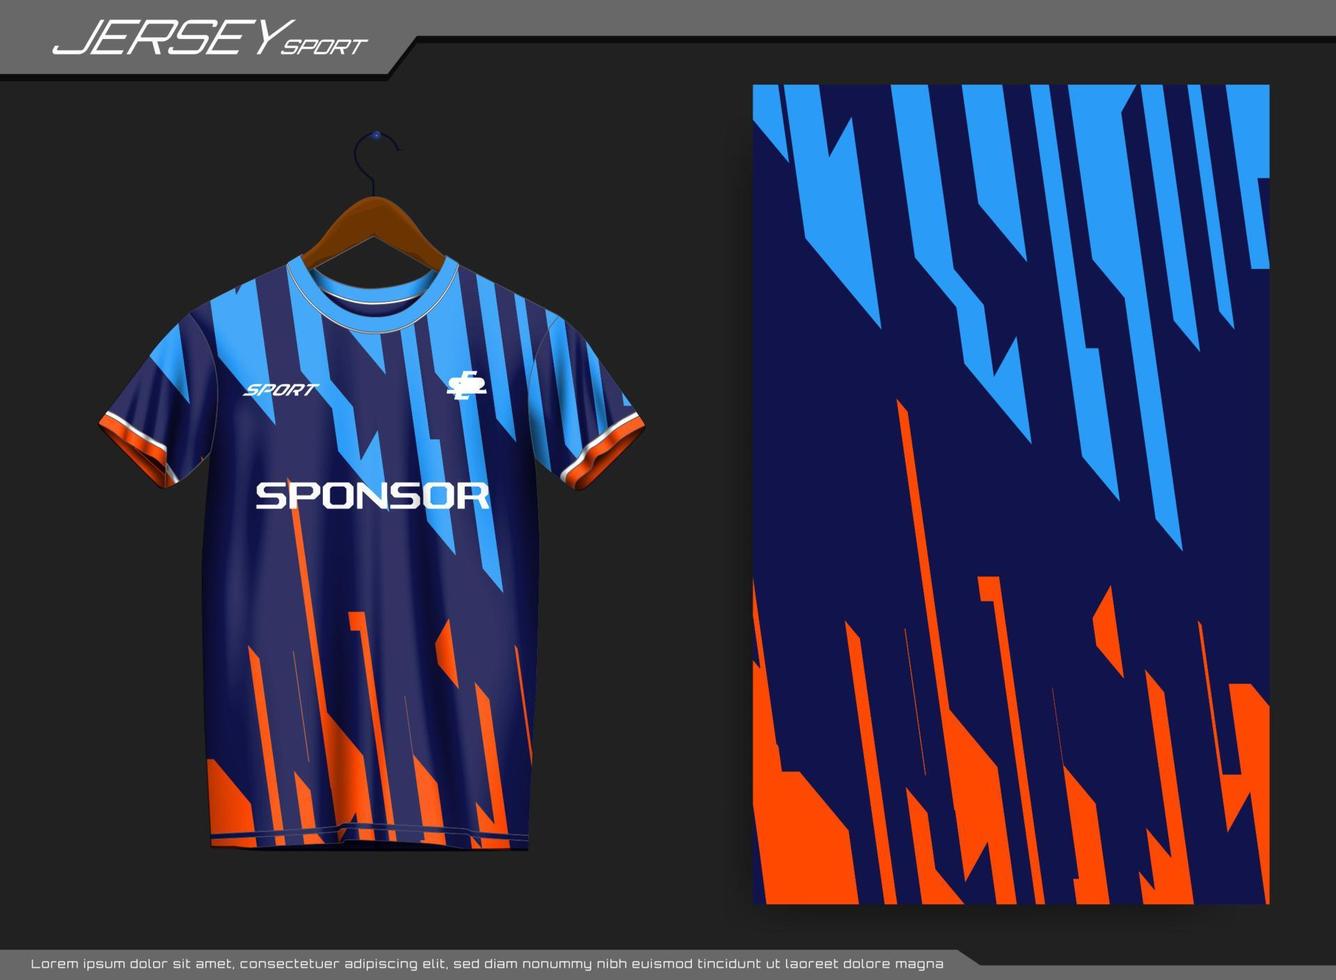 Jersey-Sport-T-Shirt. Fußballtrikot für Fußballverein. geeignet für Jersey, Hintergrund, Poster usw. vektor